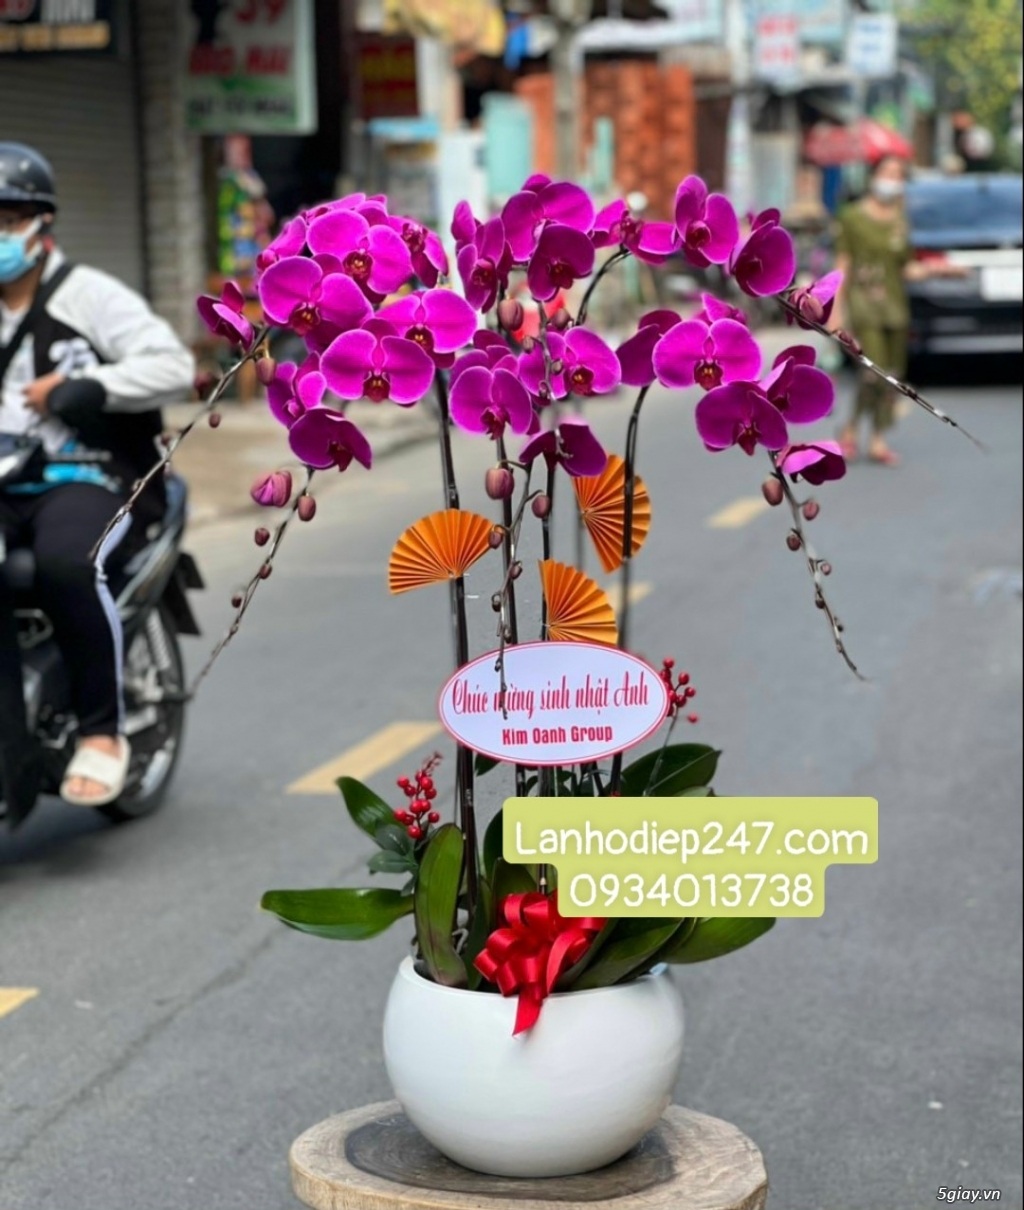 Shop Lan Hồ Điệp Sài Gòn 247 điện hoa uy tín toàn quốc 0934013738 - 13